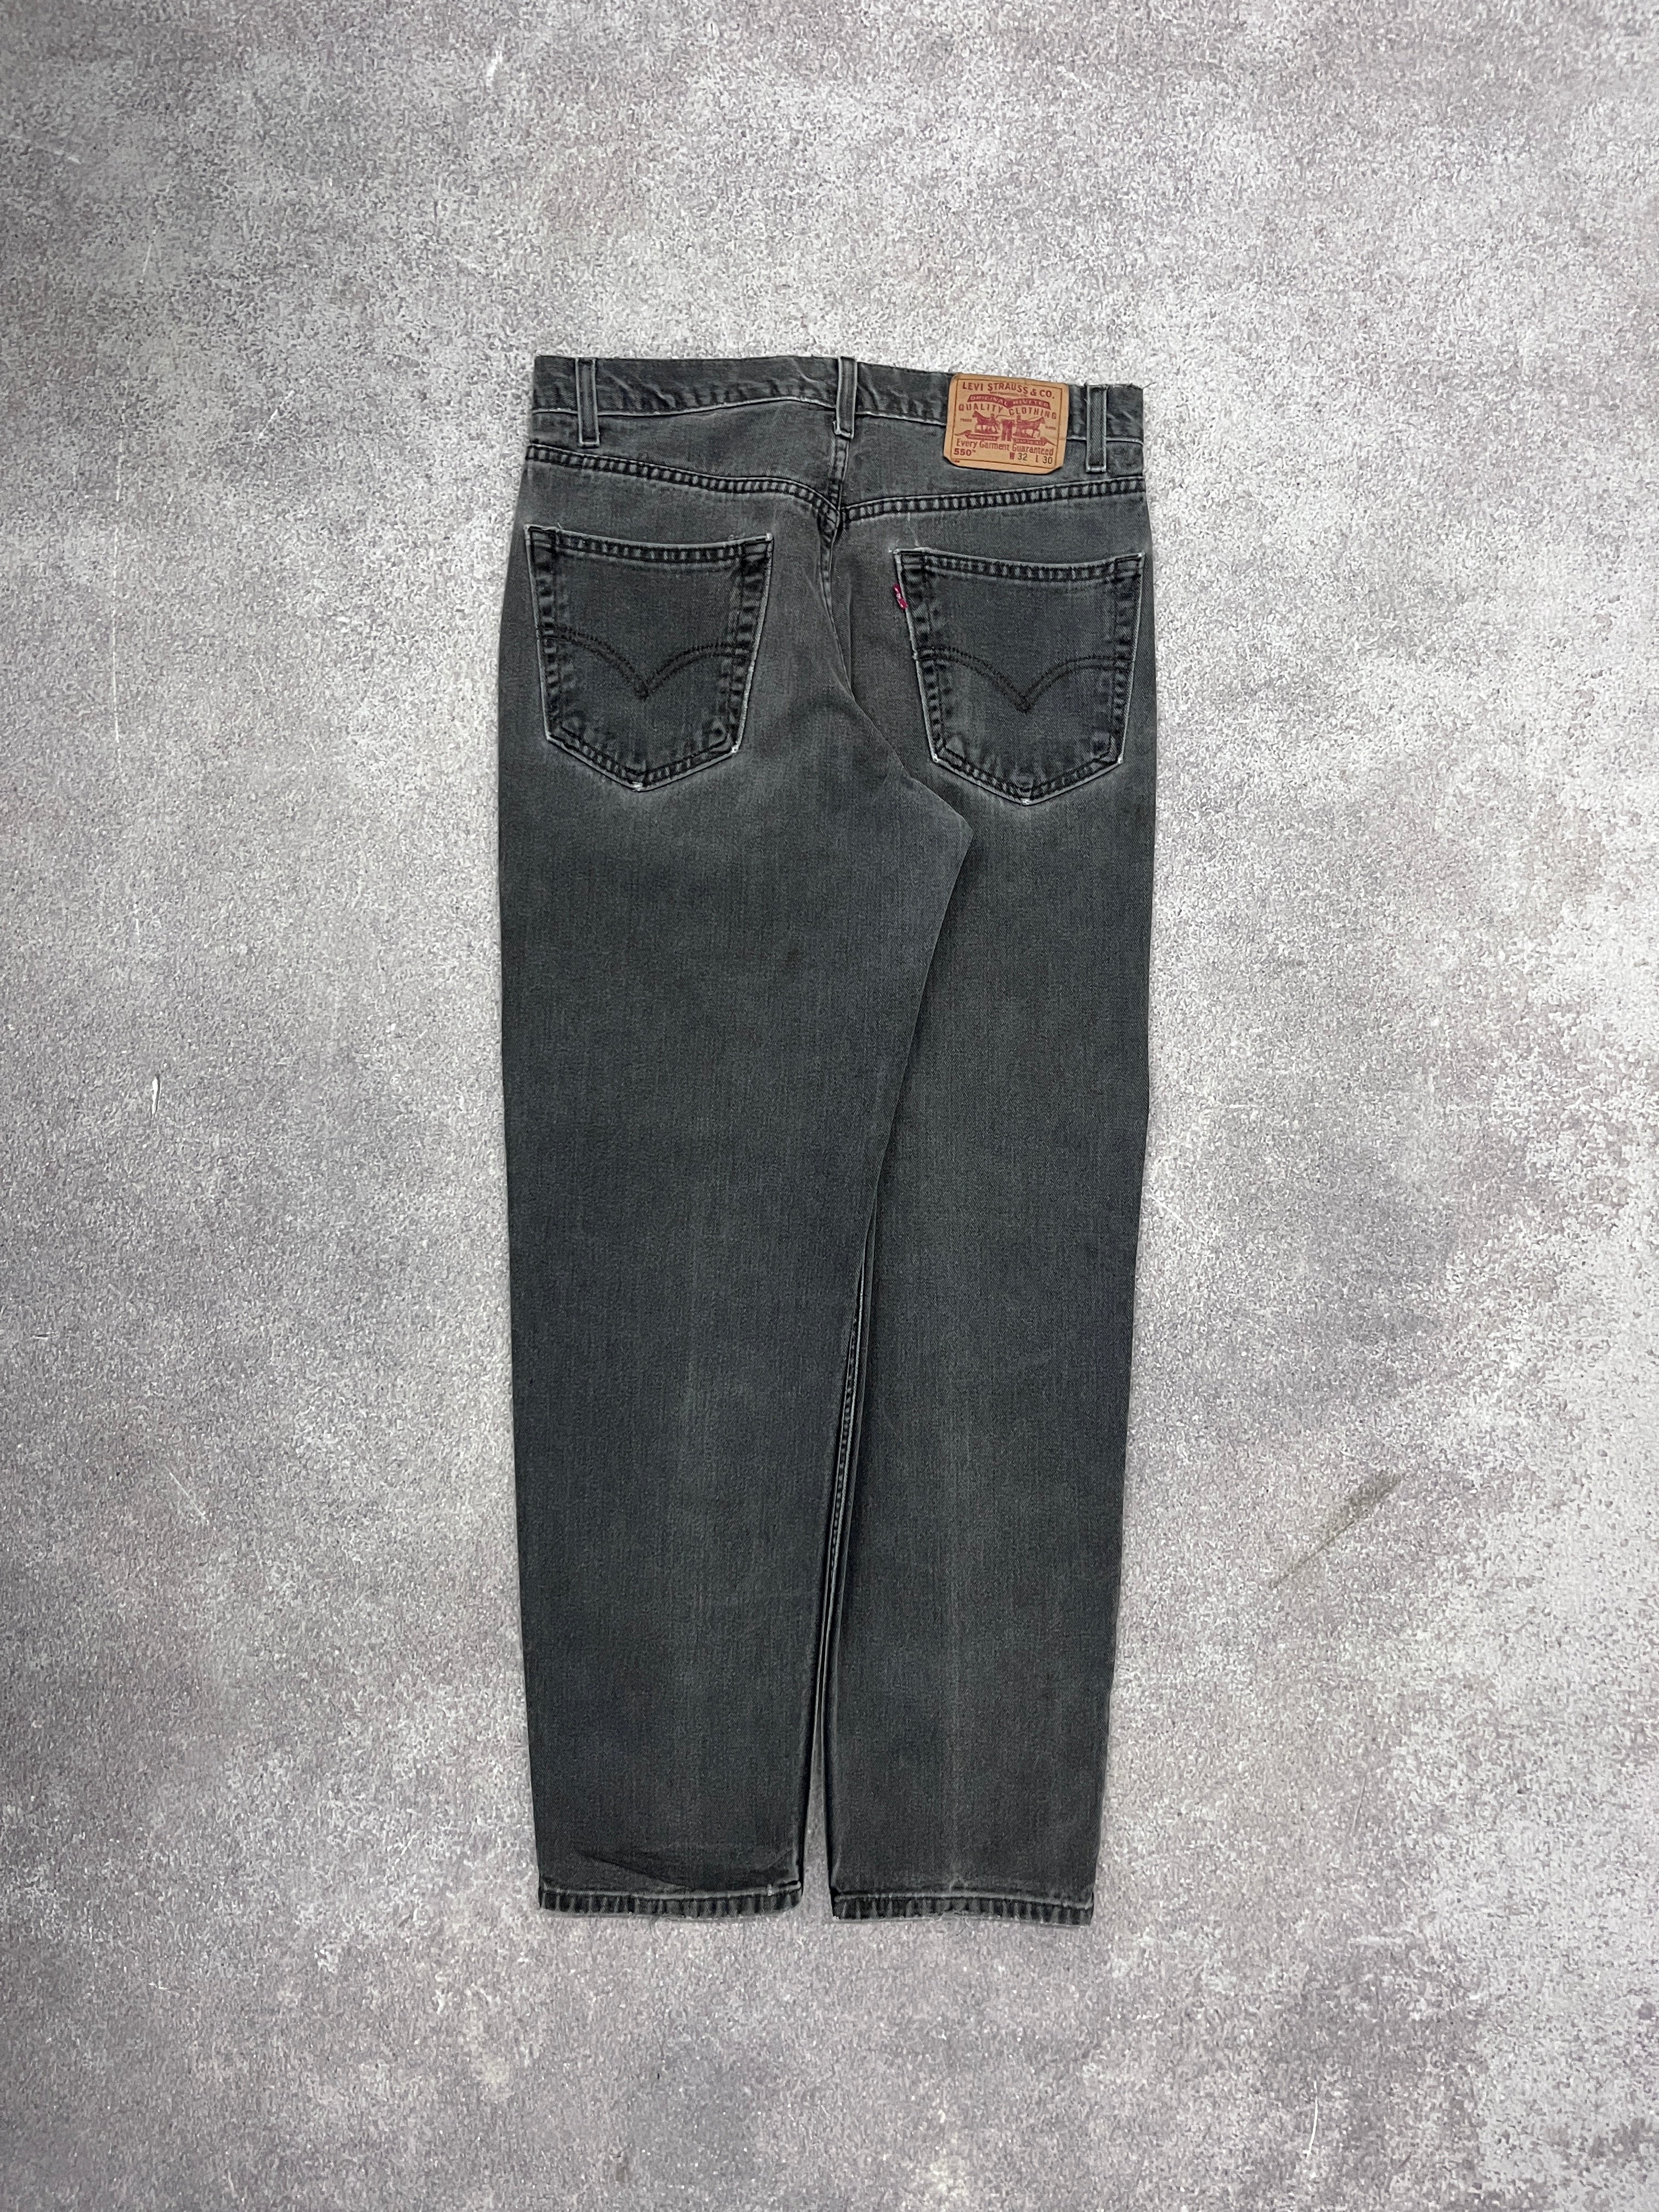 Vintage Levi 550 Denim Jeans // W32 L30 - RHAGHOUSE VINTAGE